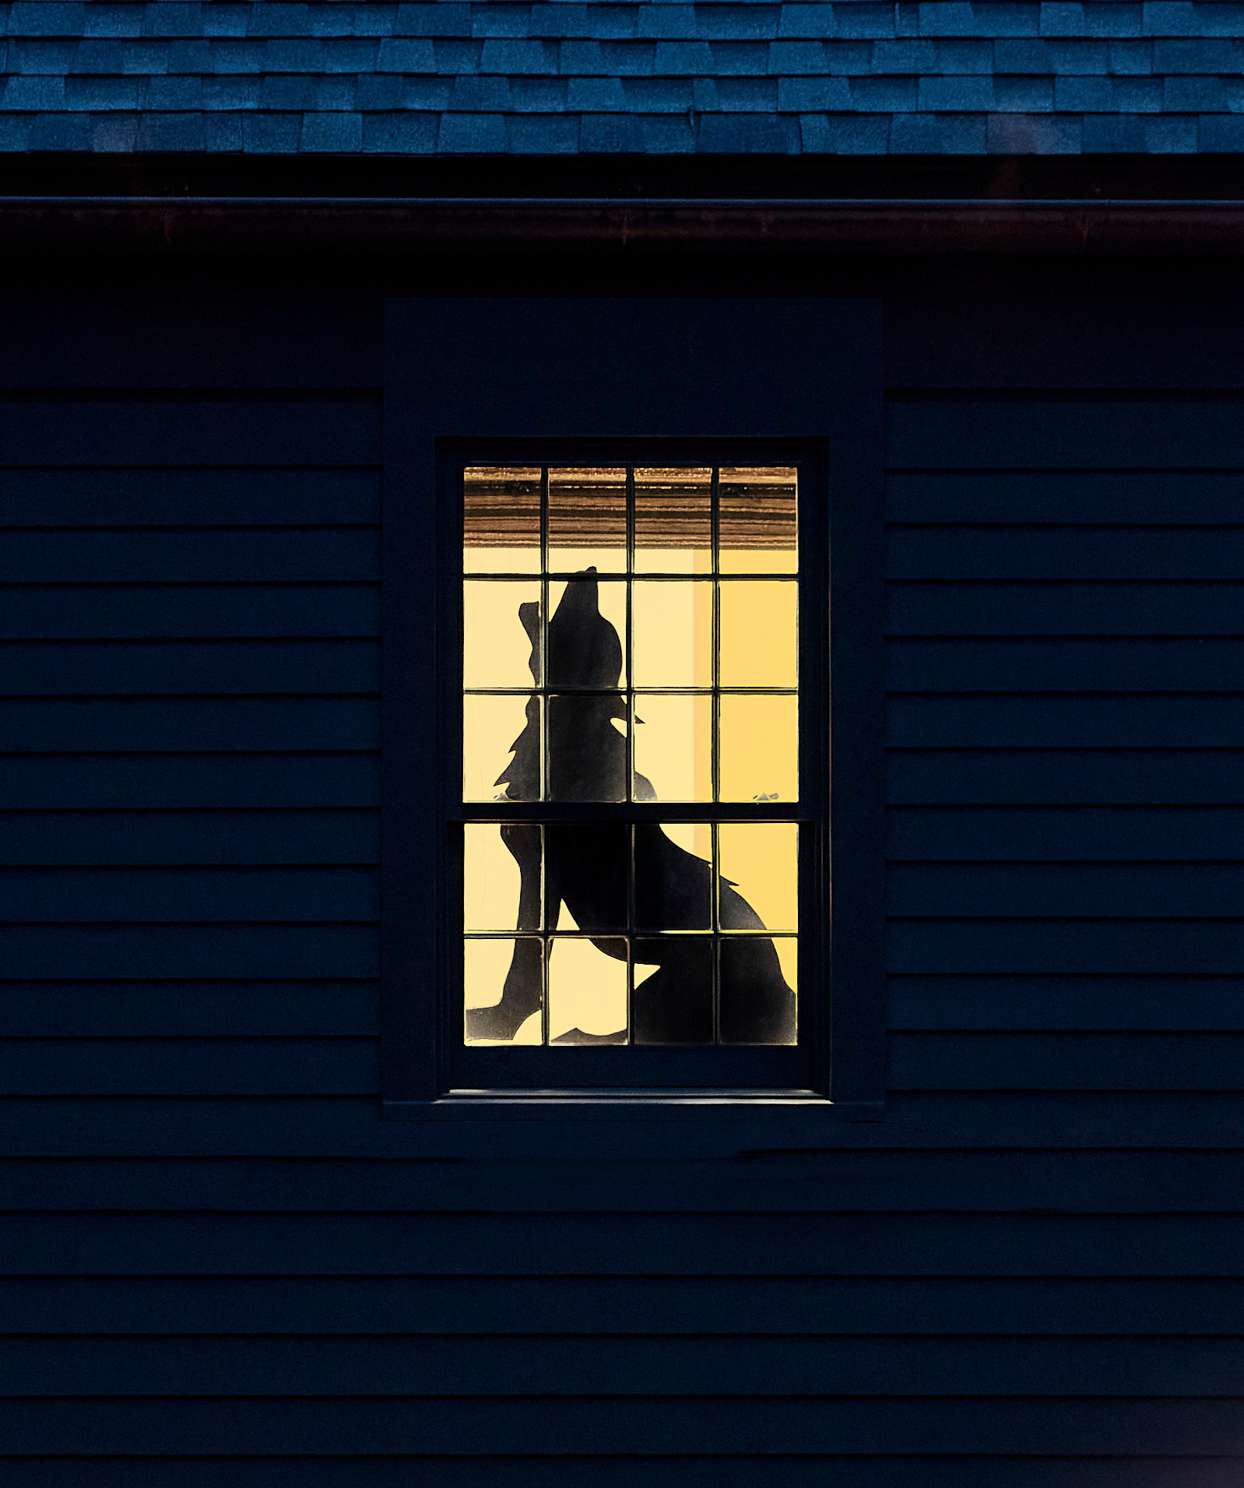 fantastic beast window silhouette in house